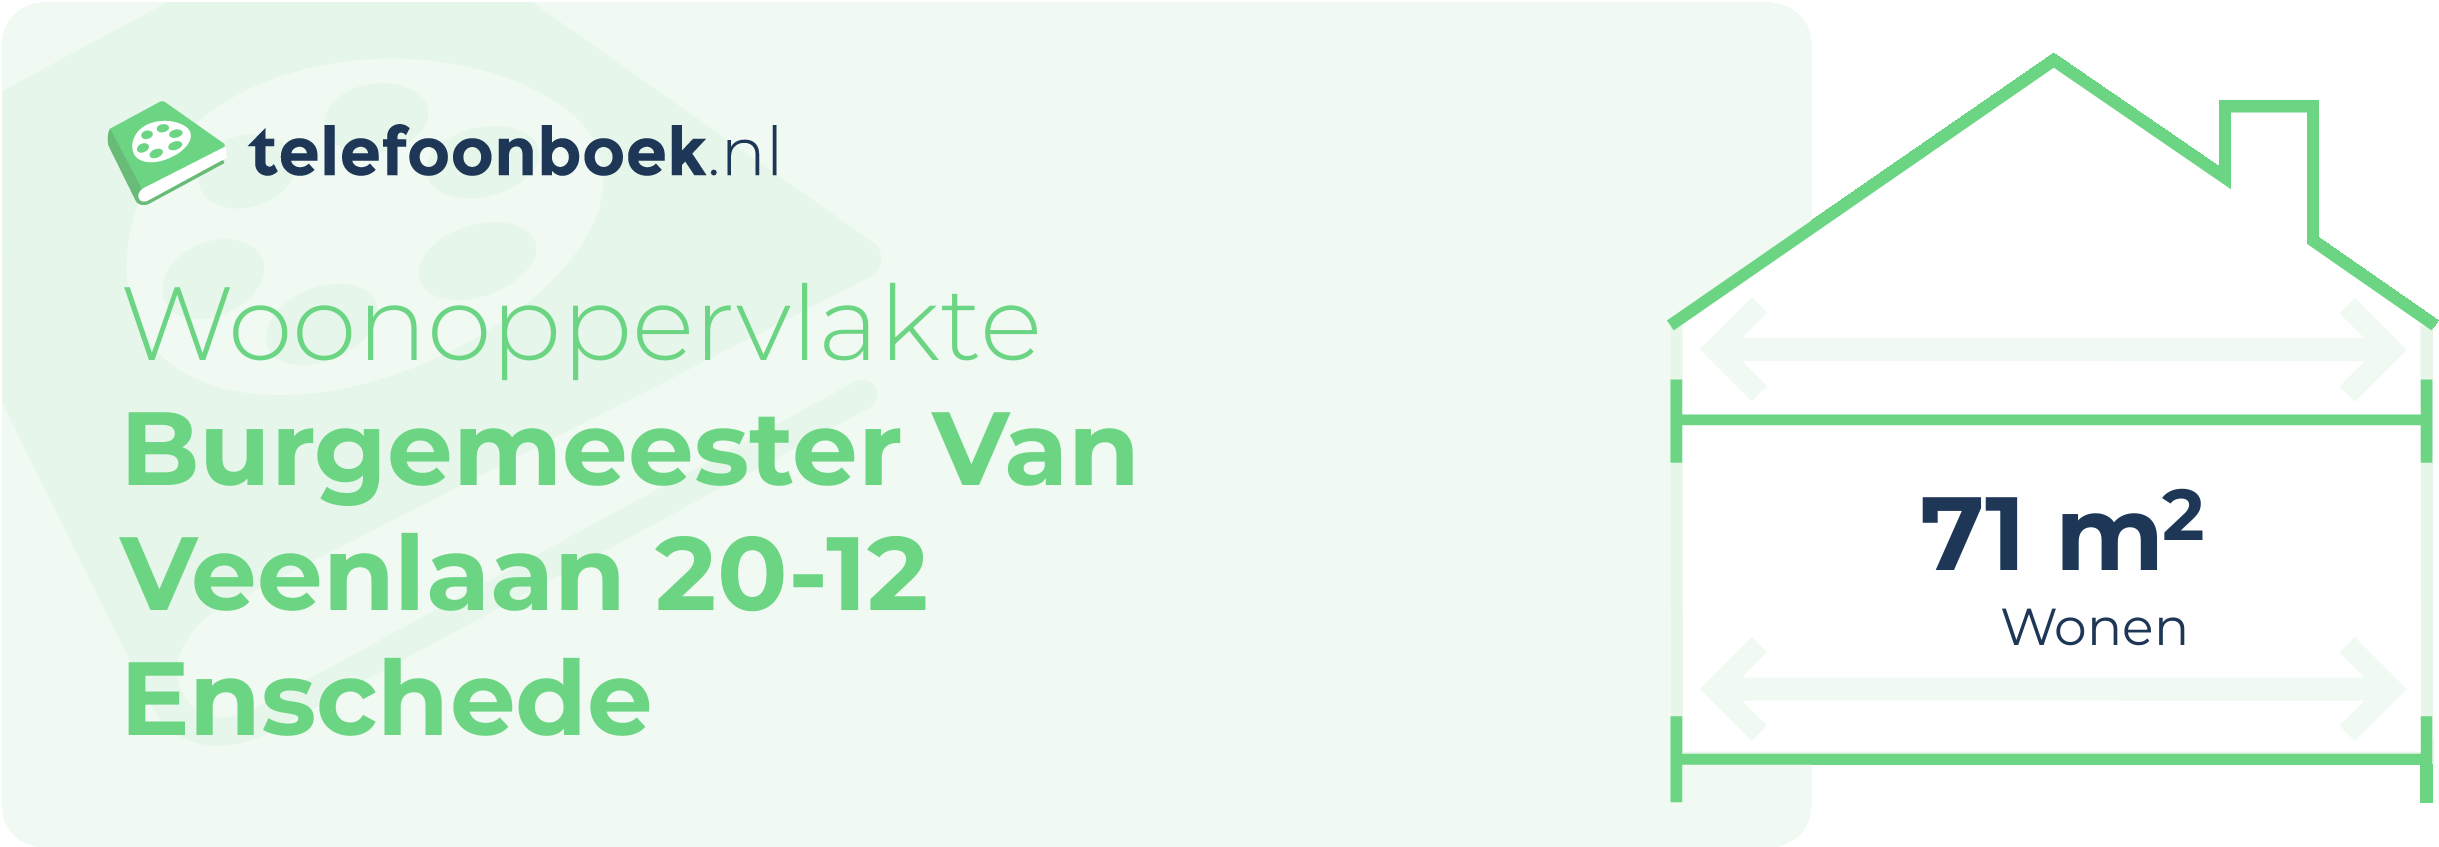 Woonoppervlakte Burgemeester Van Veenlaan 20-12 Enschede